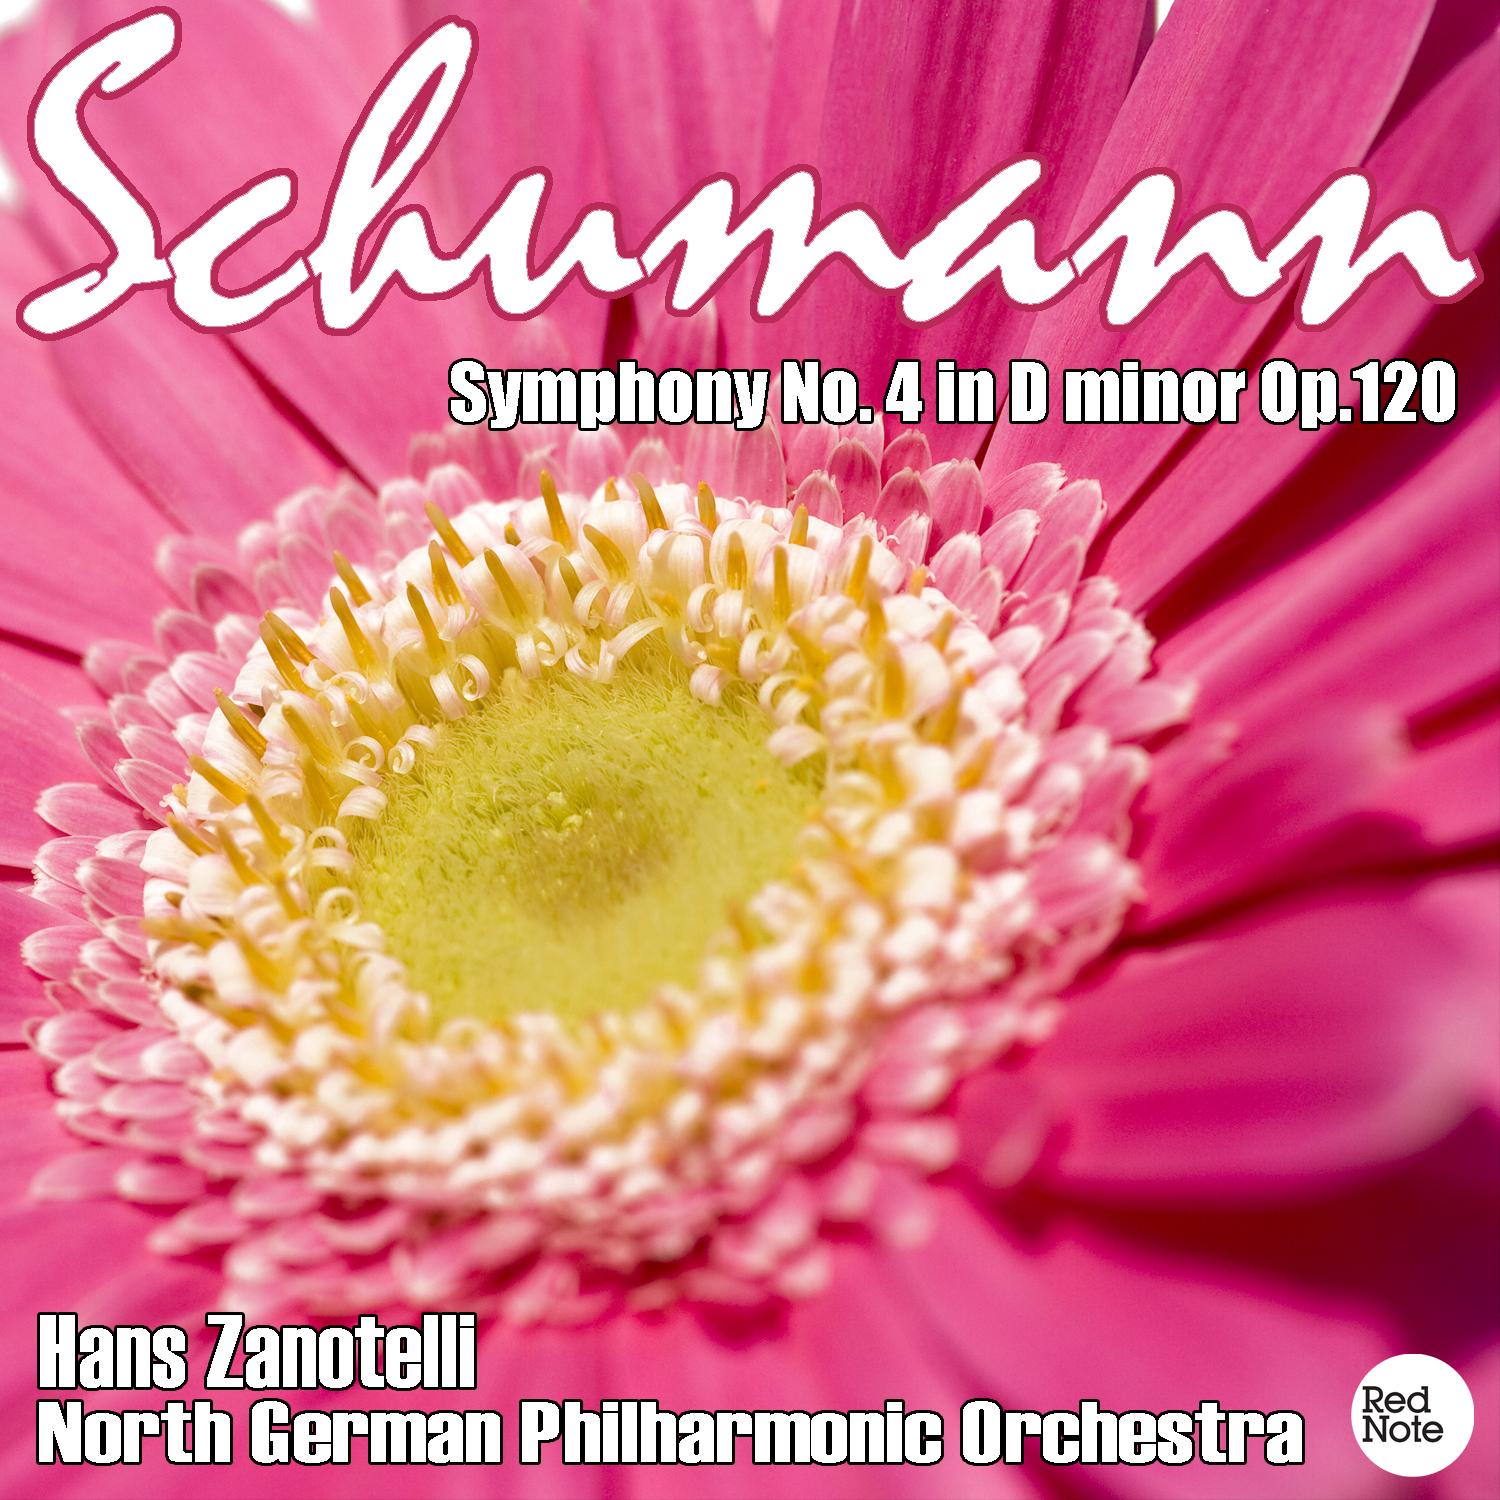 Symphony No.4 in D Minor, Op.120: Ziemlich langsam - Lebhaft - Romanze - Scherzo lebhaft - Lebhaft